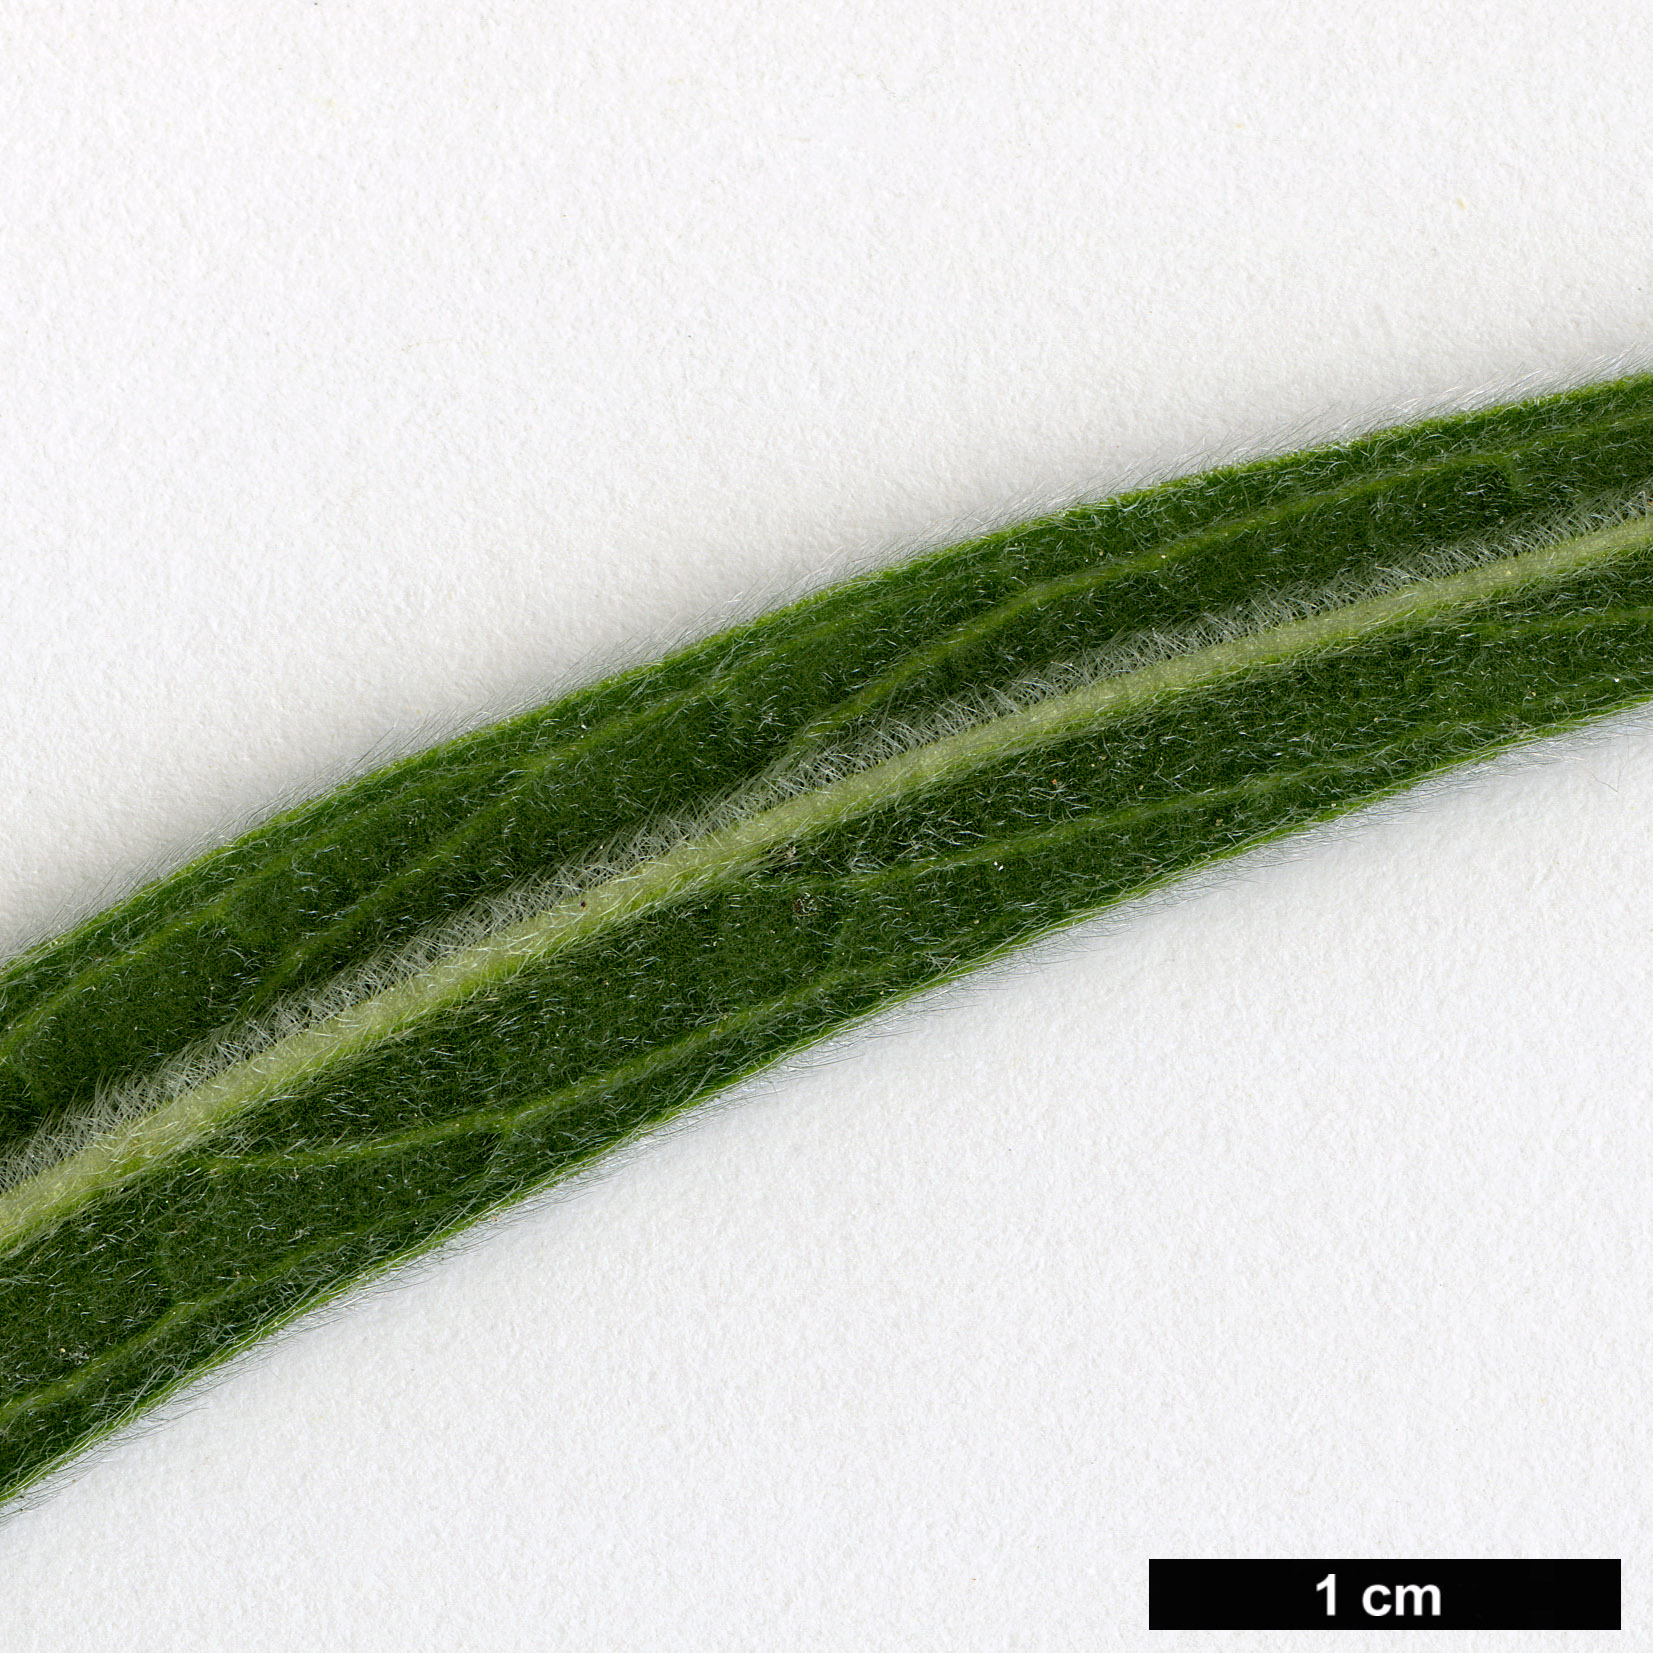 High resolution image: Family: Boraginaceae - Genus: Echium - Taxon: wildpretii